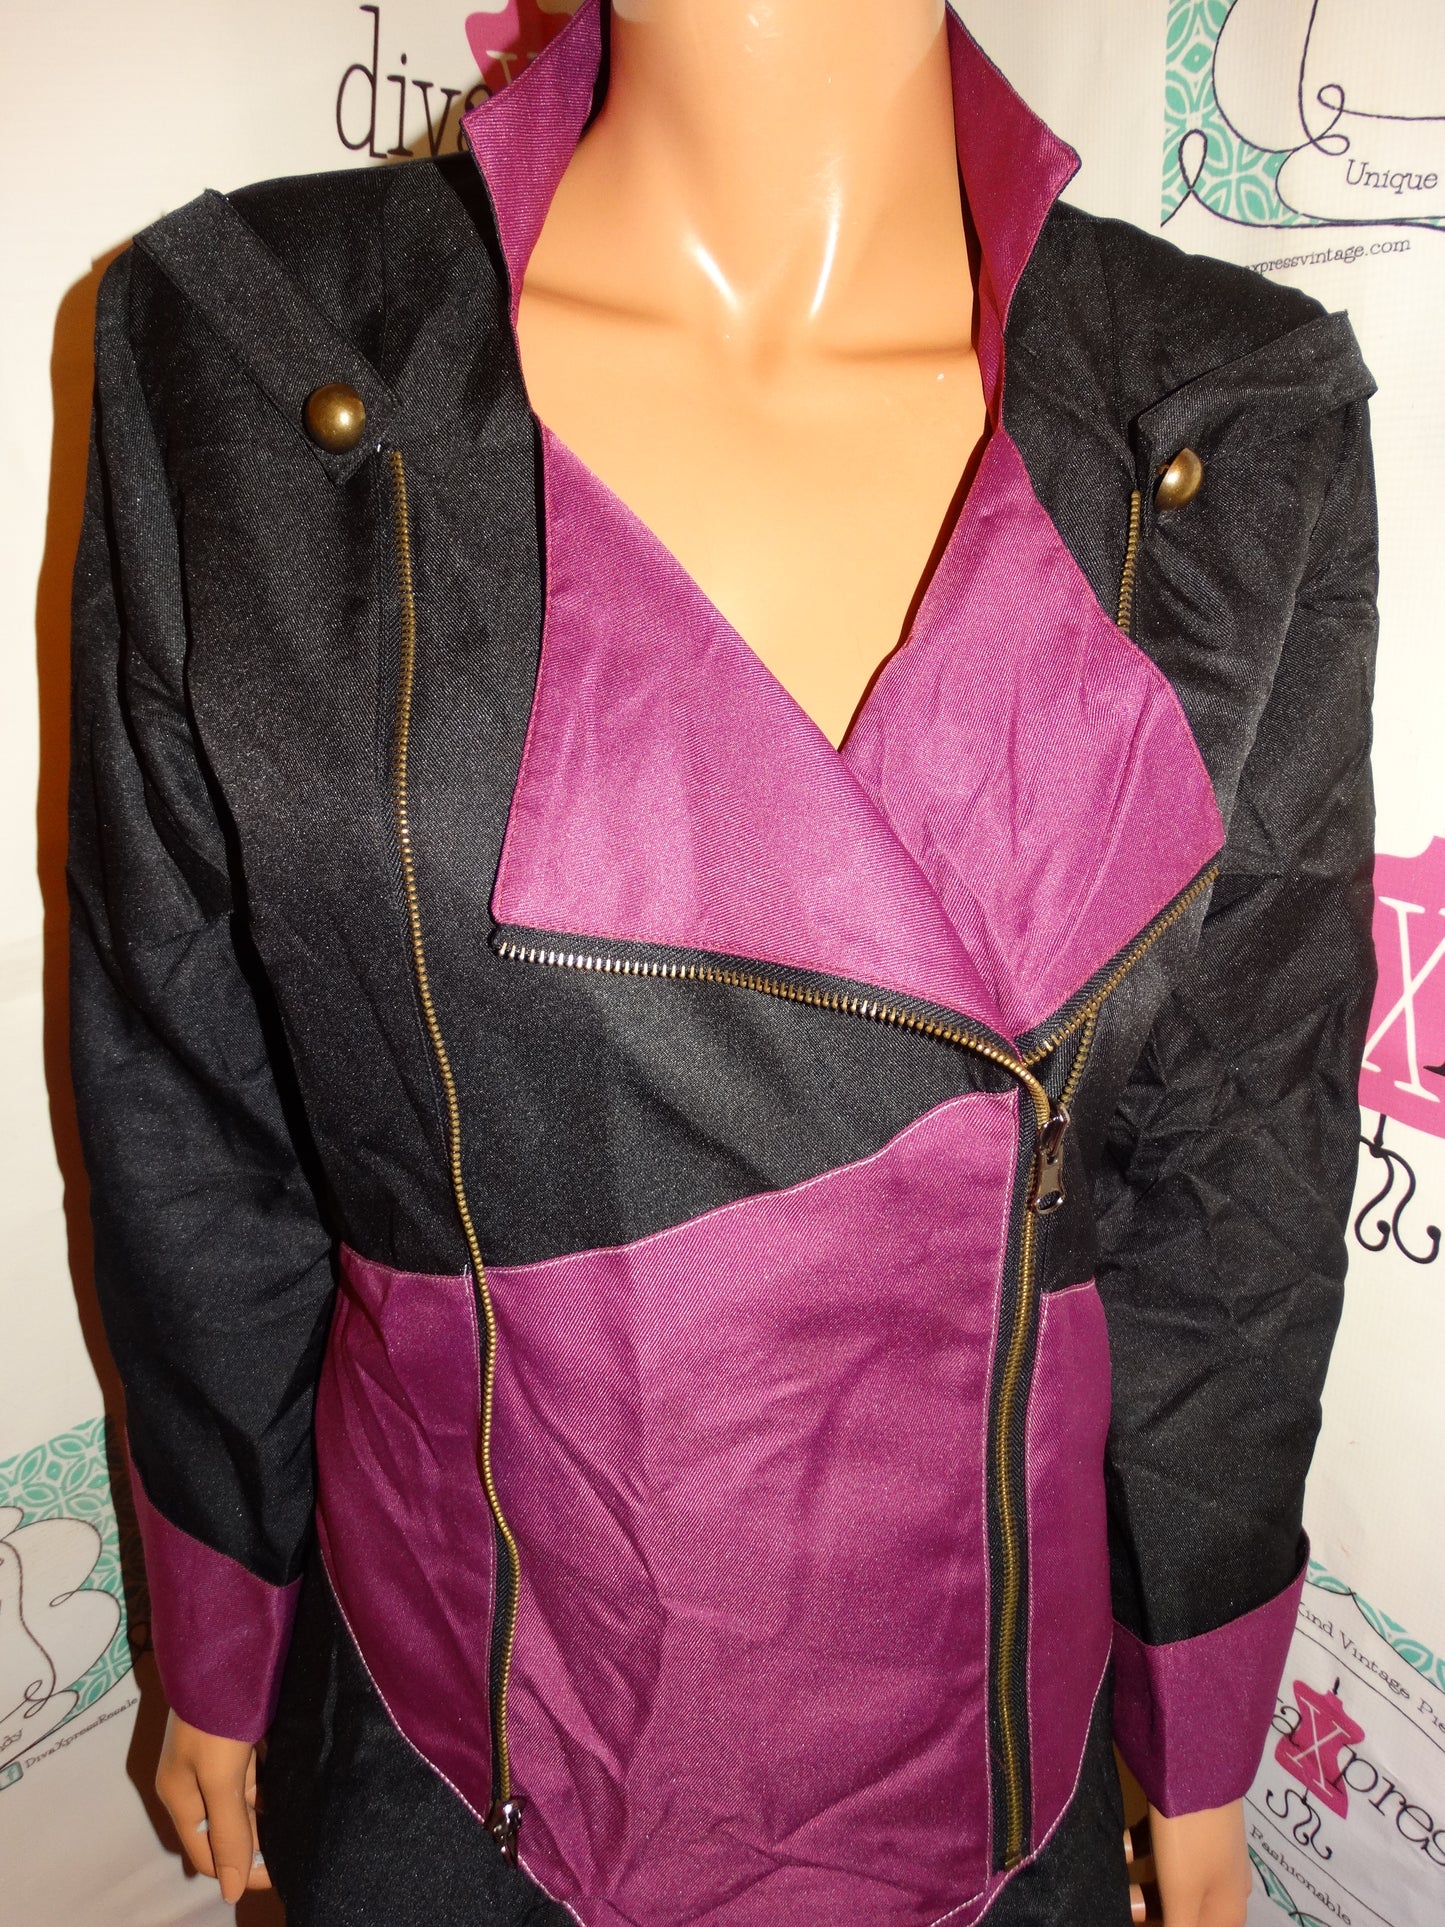 Vintage Purple/Black Tuxedo Style Jacket Size M